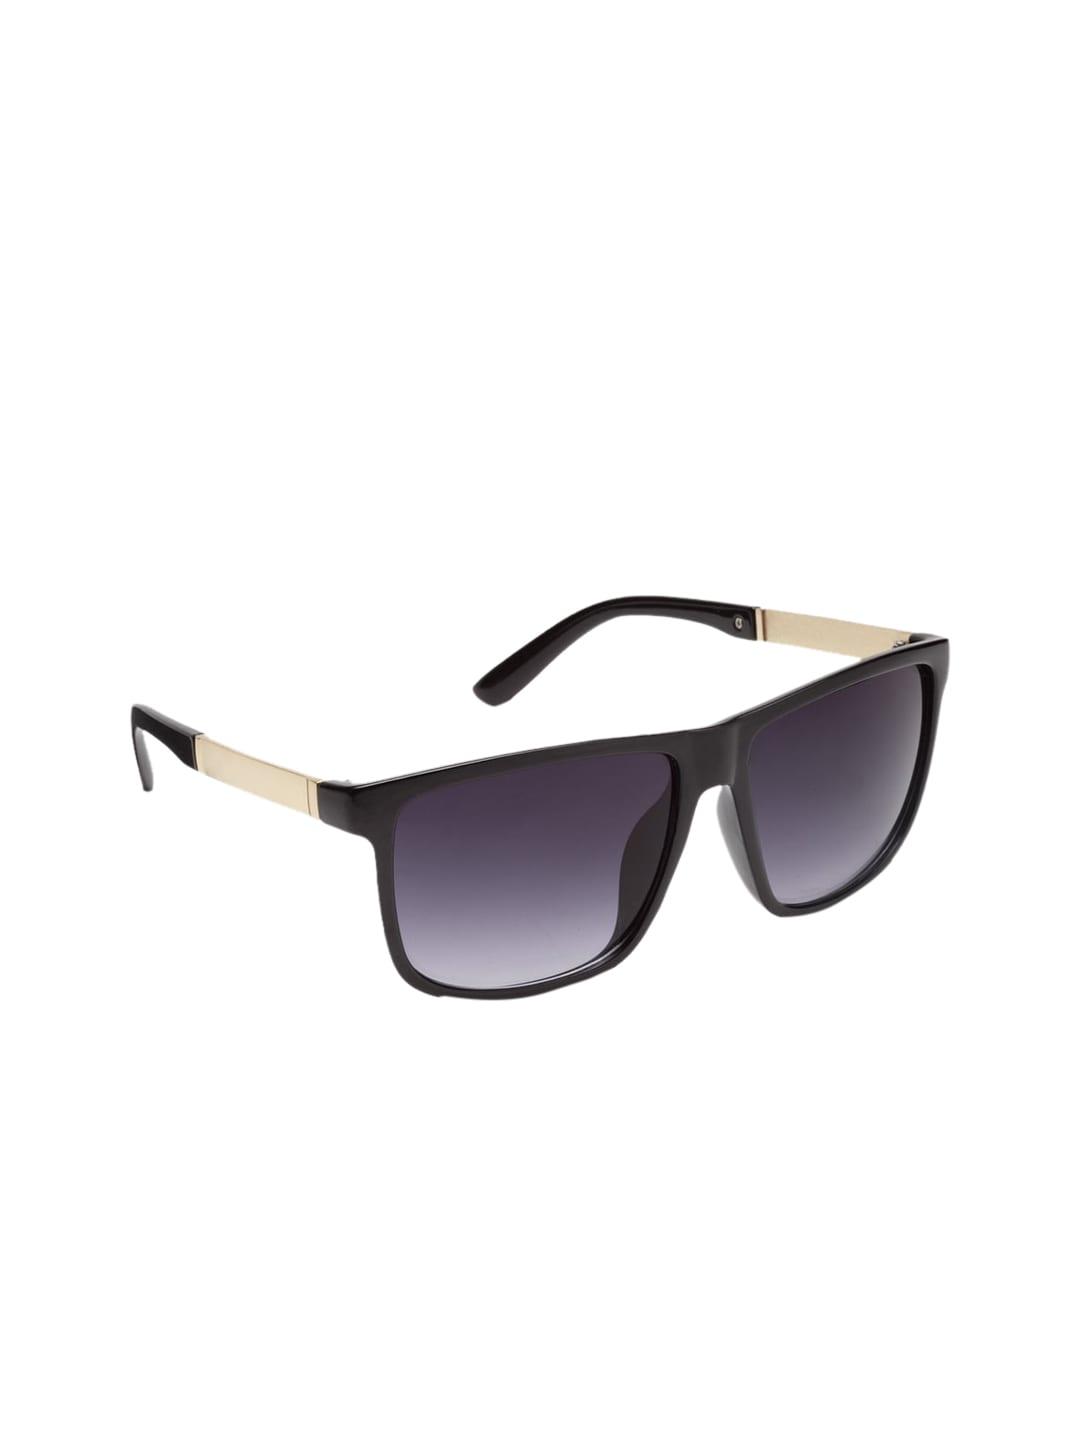 Get Glamr Unisex Wayfarer Sunglasses SG-UN-MT-240D-12